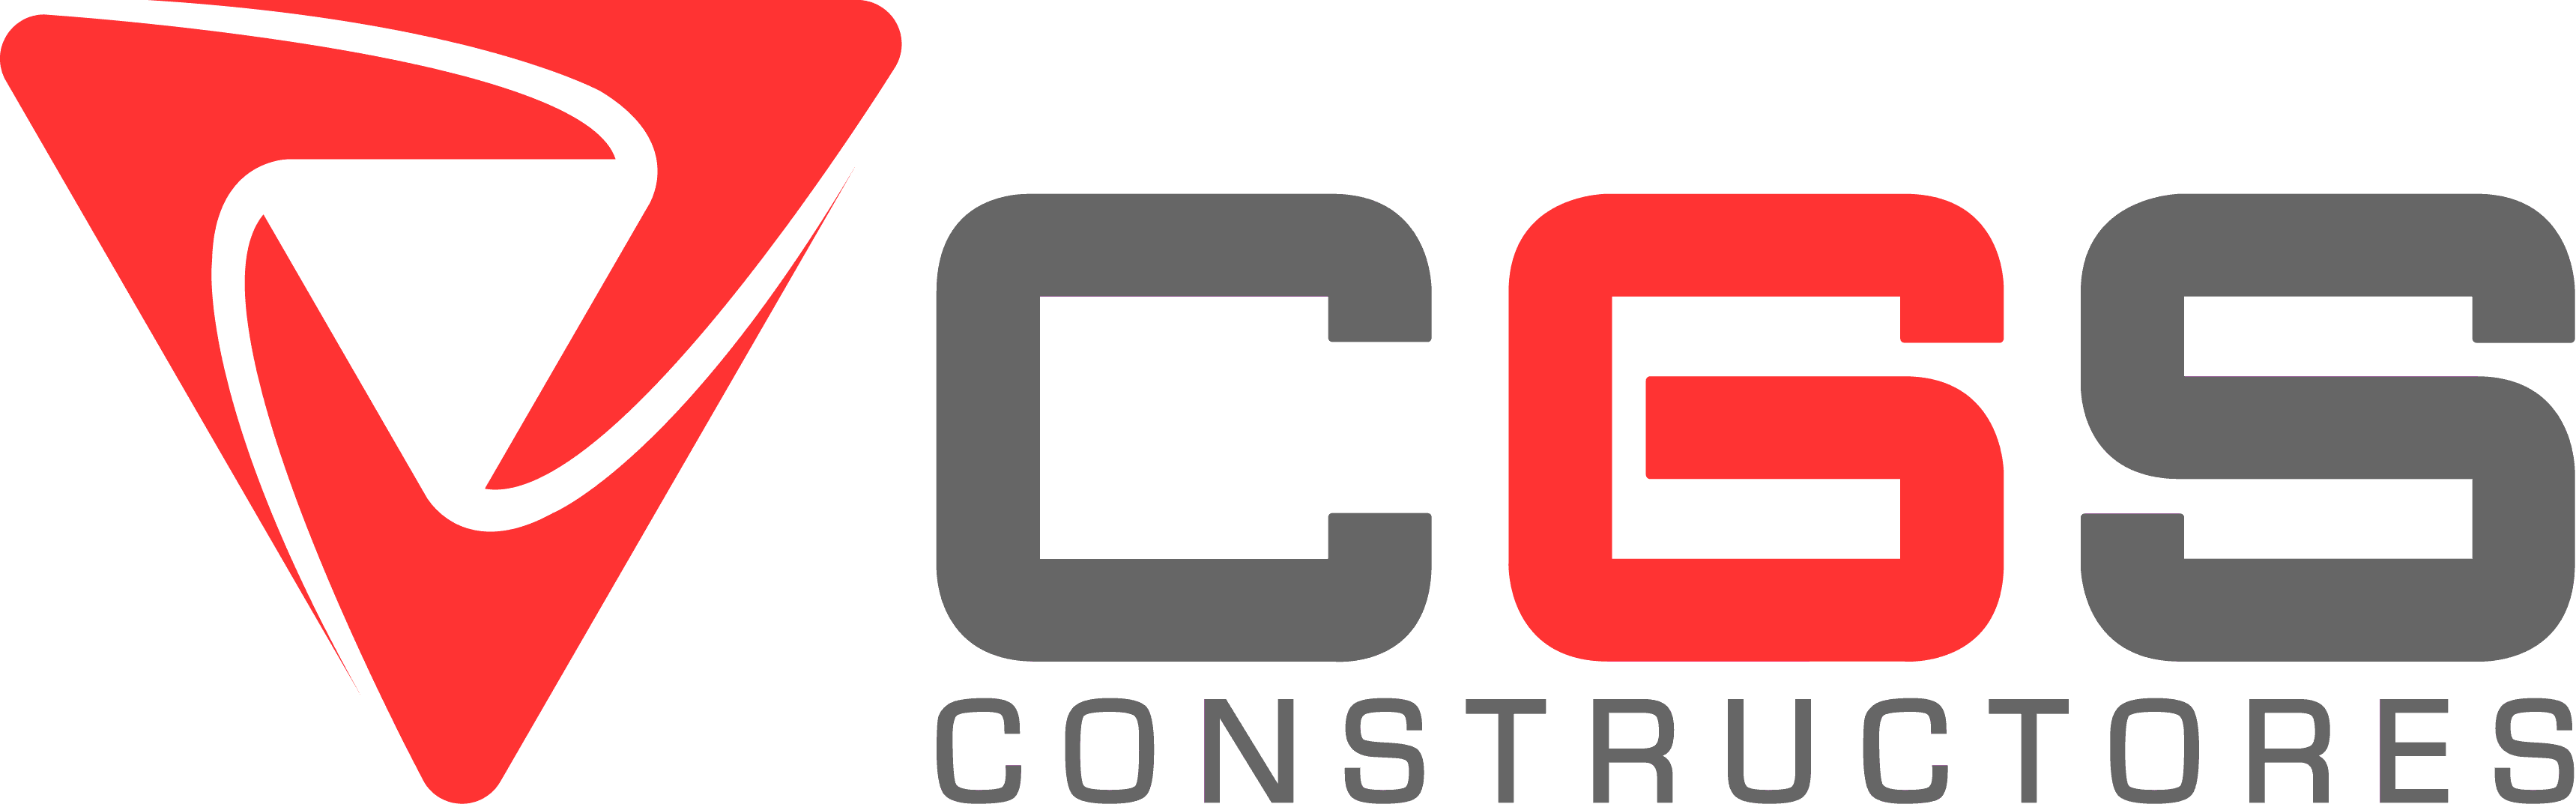 CGS Constructores